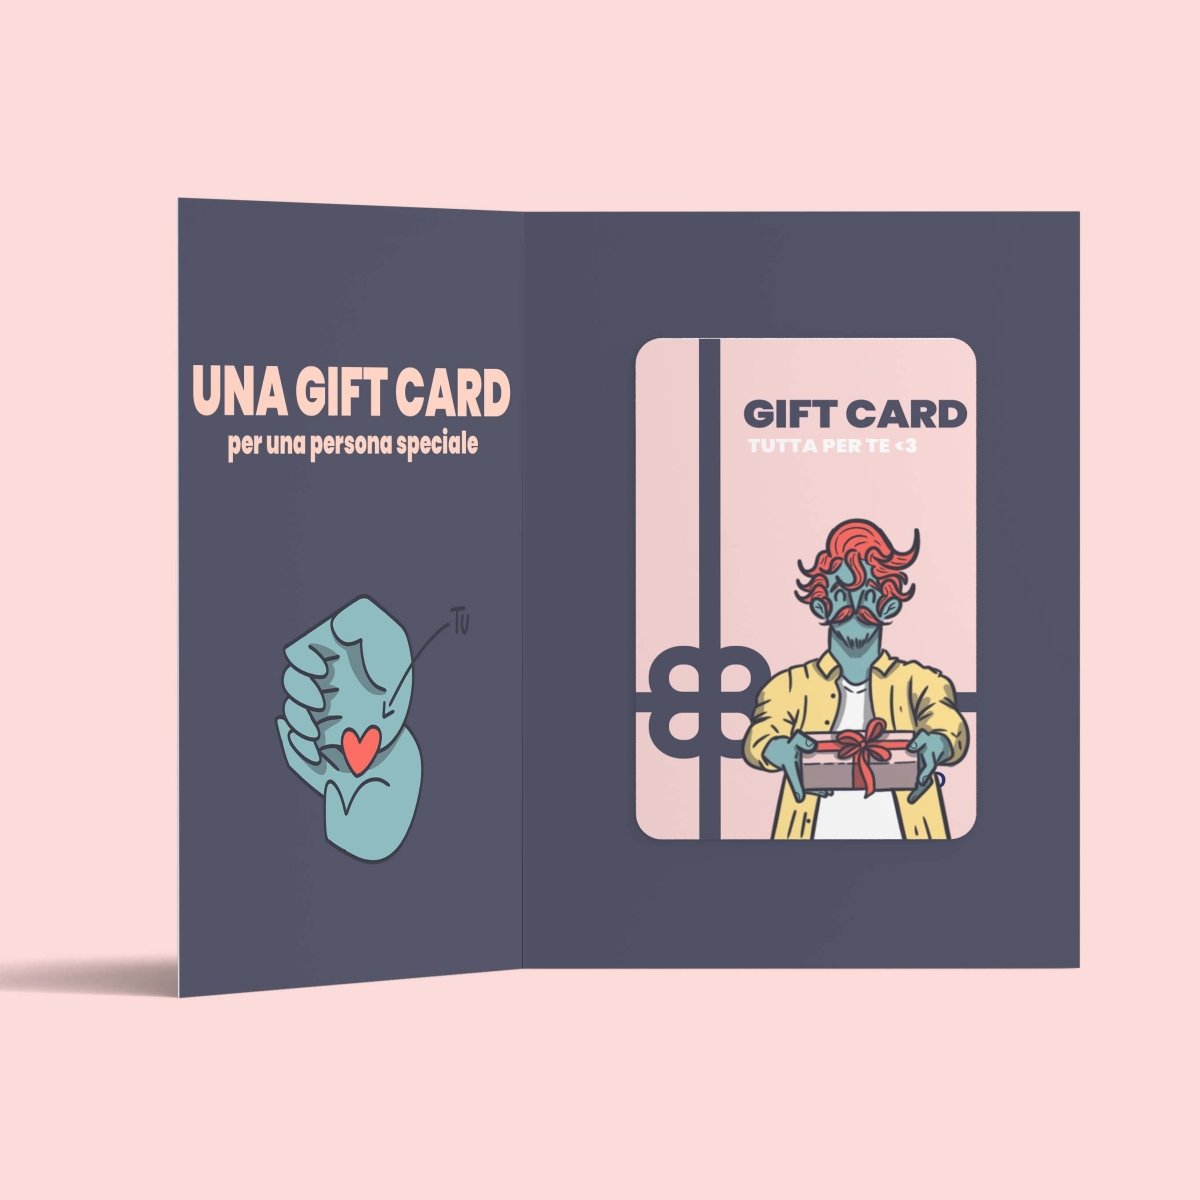 Gift Card digitale - ilbaffogram | Giulio Mosca